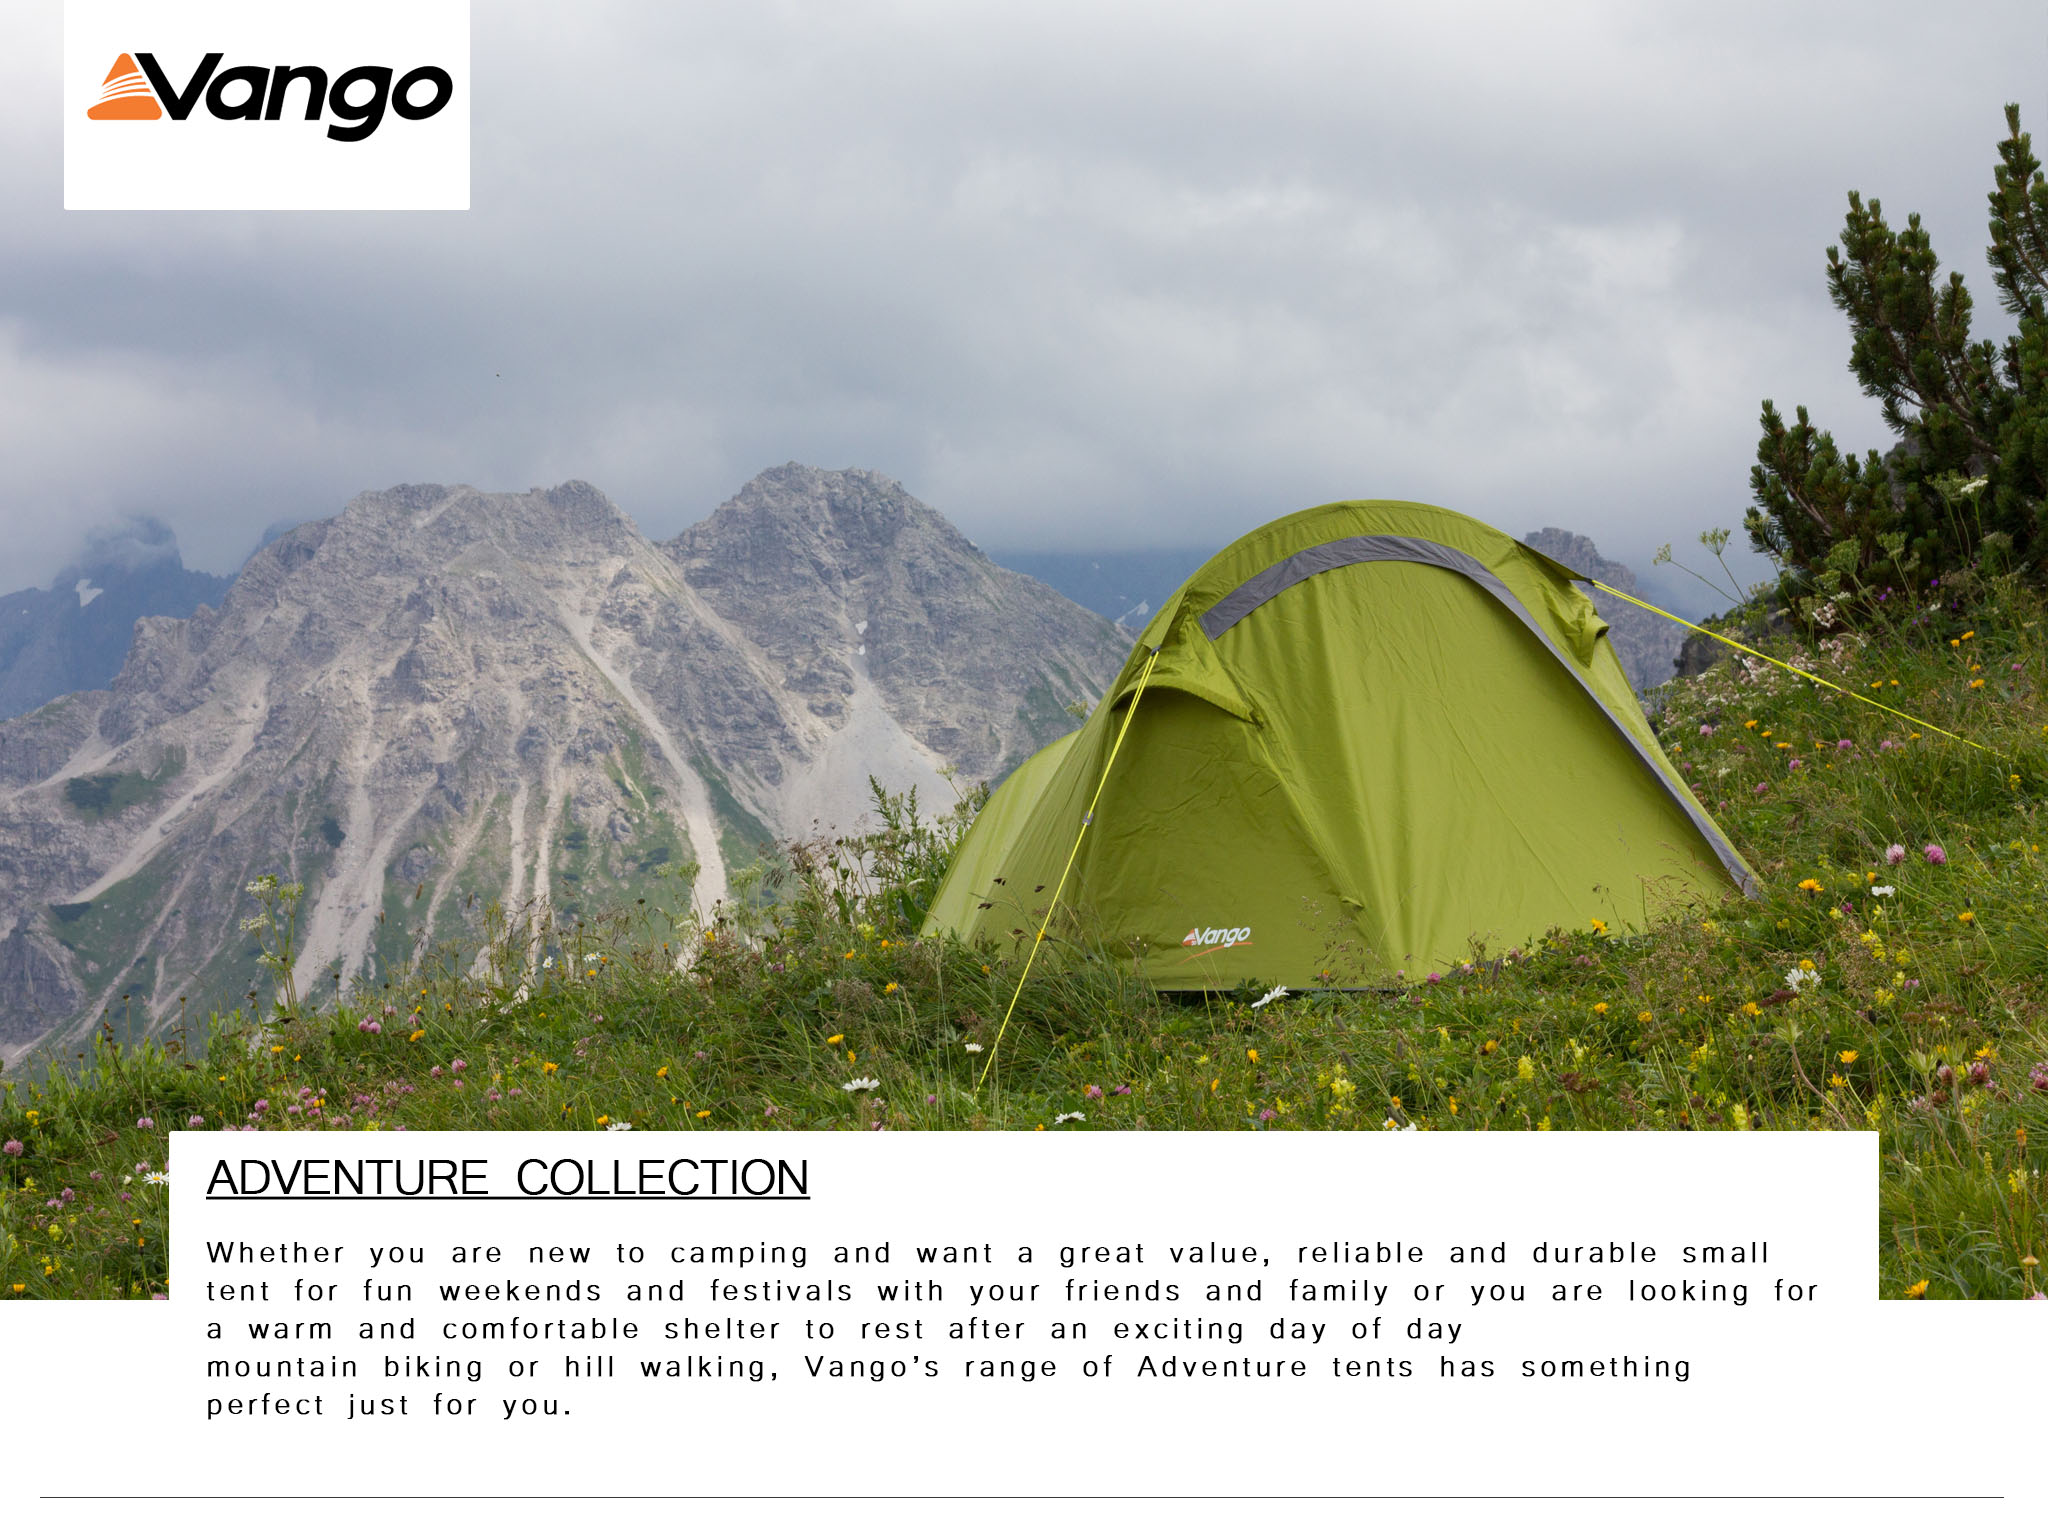 Vango Adventure Collection